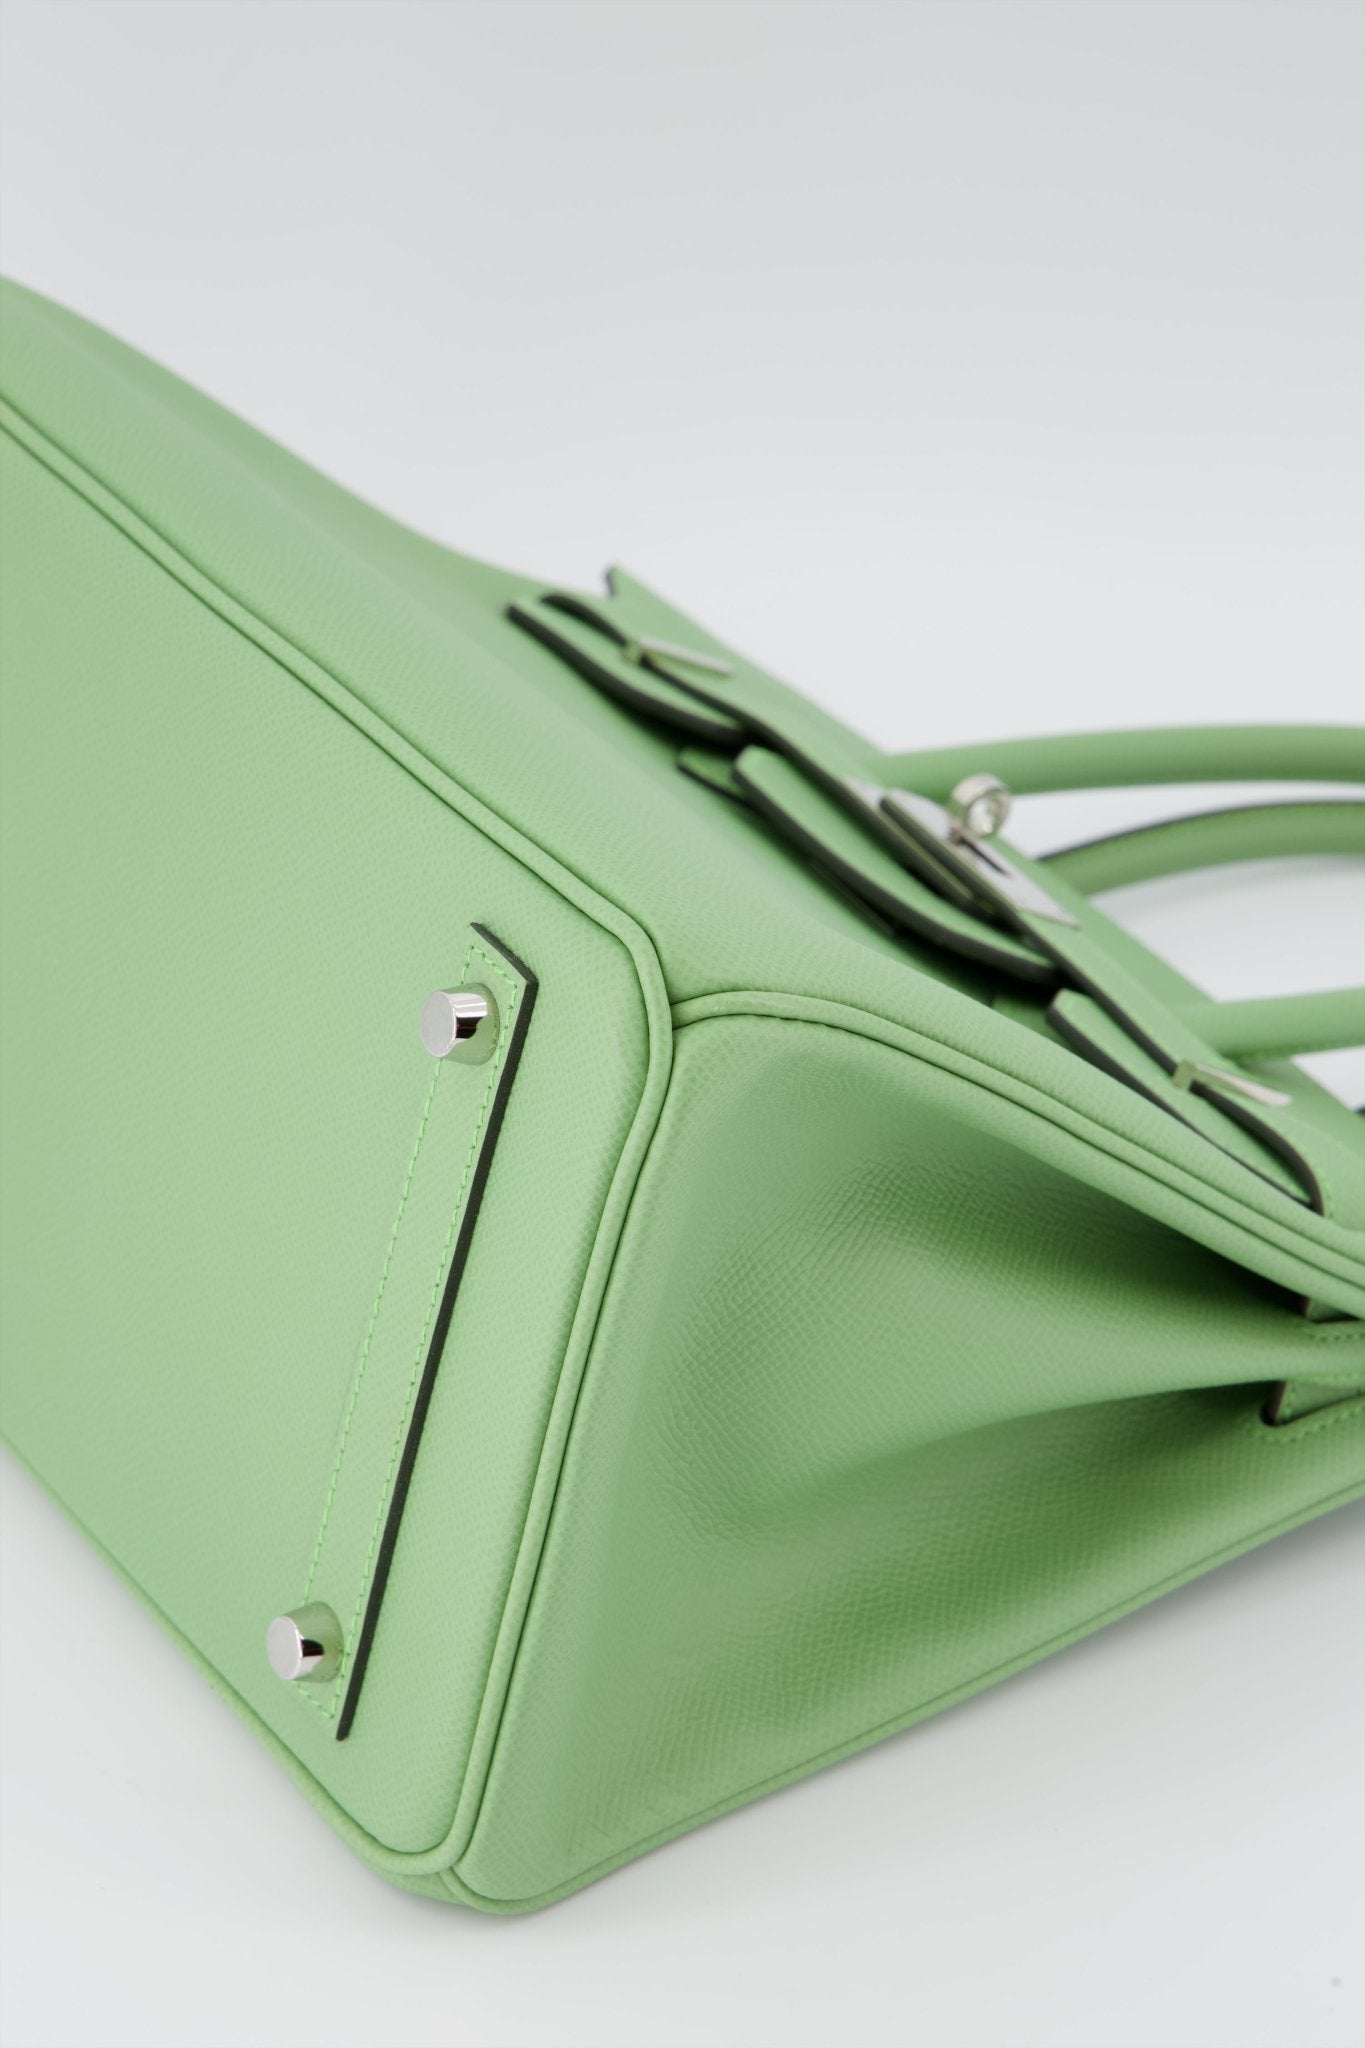 Hermes Birkin 30 Handbag Vert Criquet